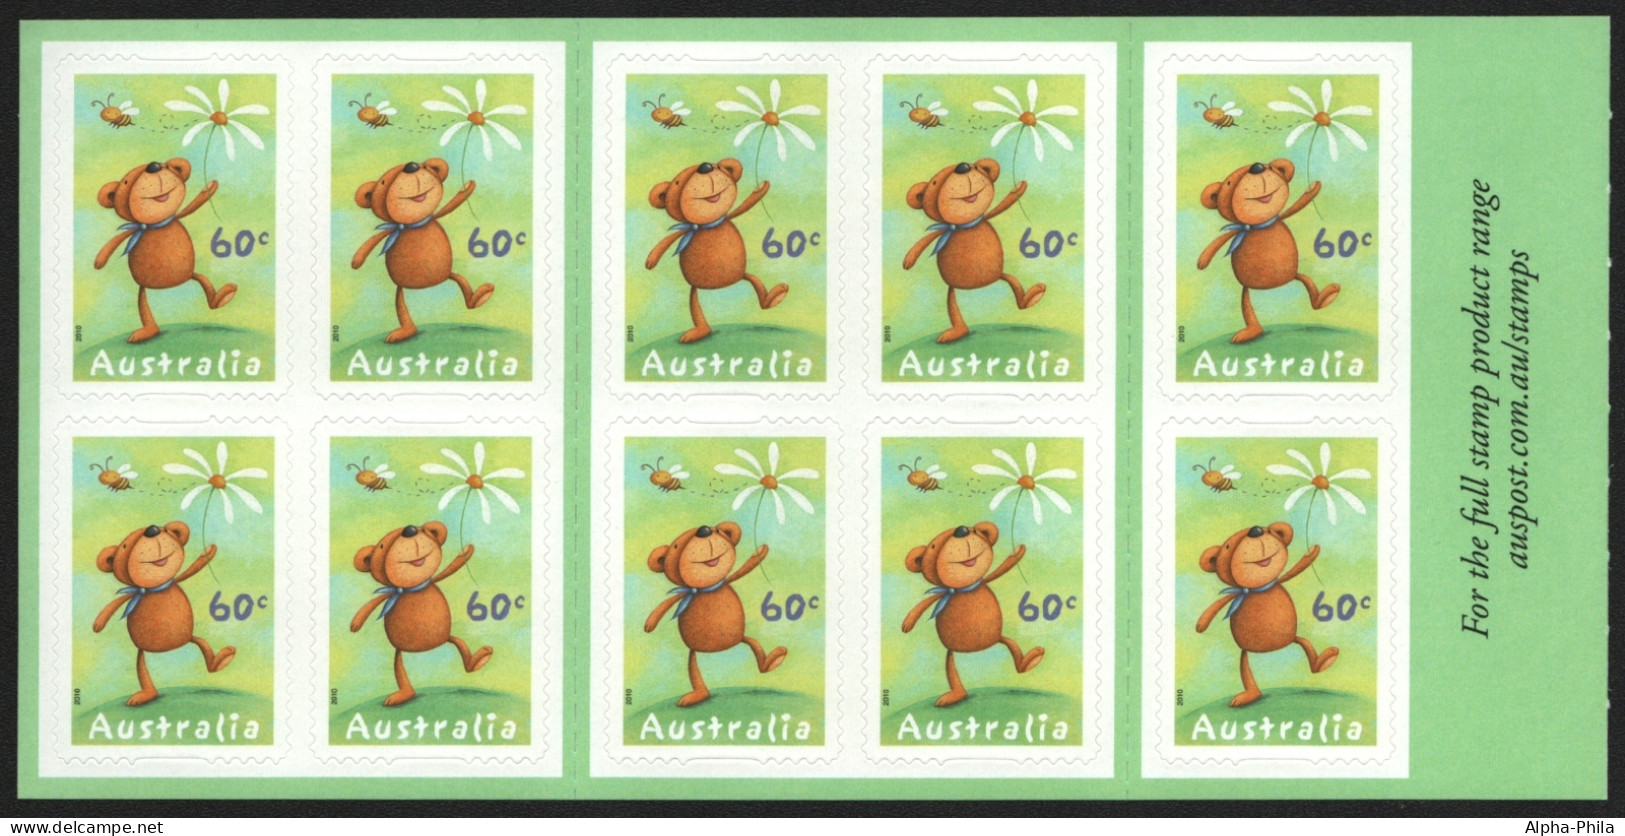 Australien 2010 - Mi-Nr. 3439 BA ** - MNH - Markenheft 460 - Grußmarken - Mint Stamps